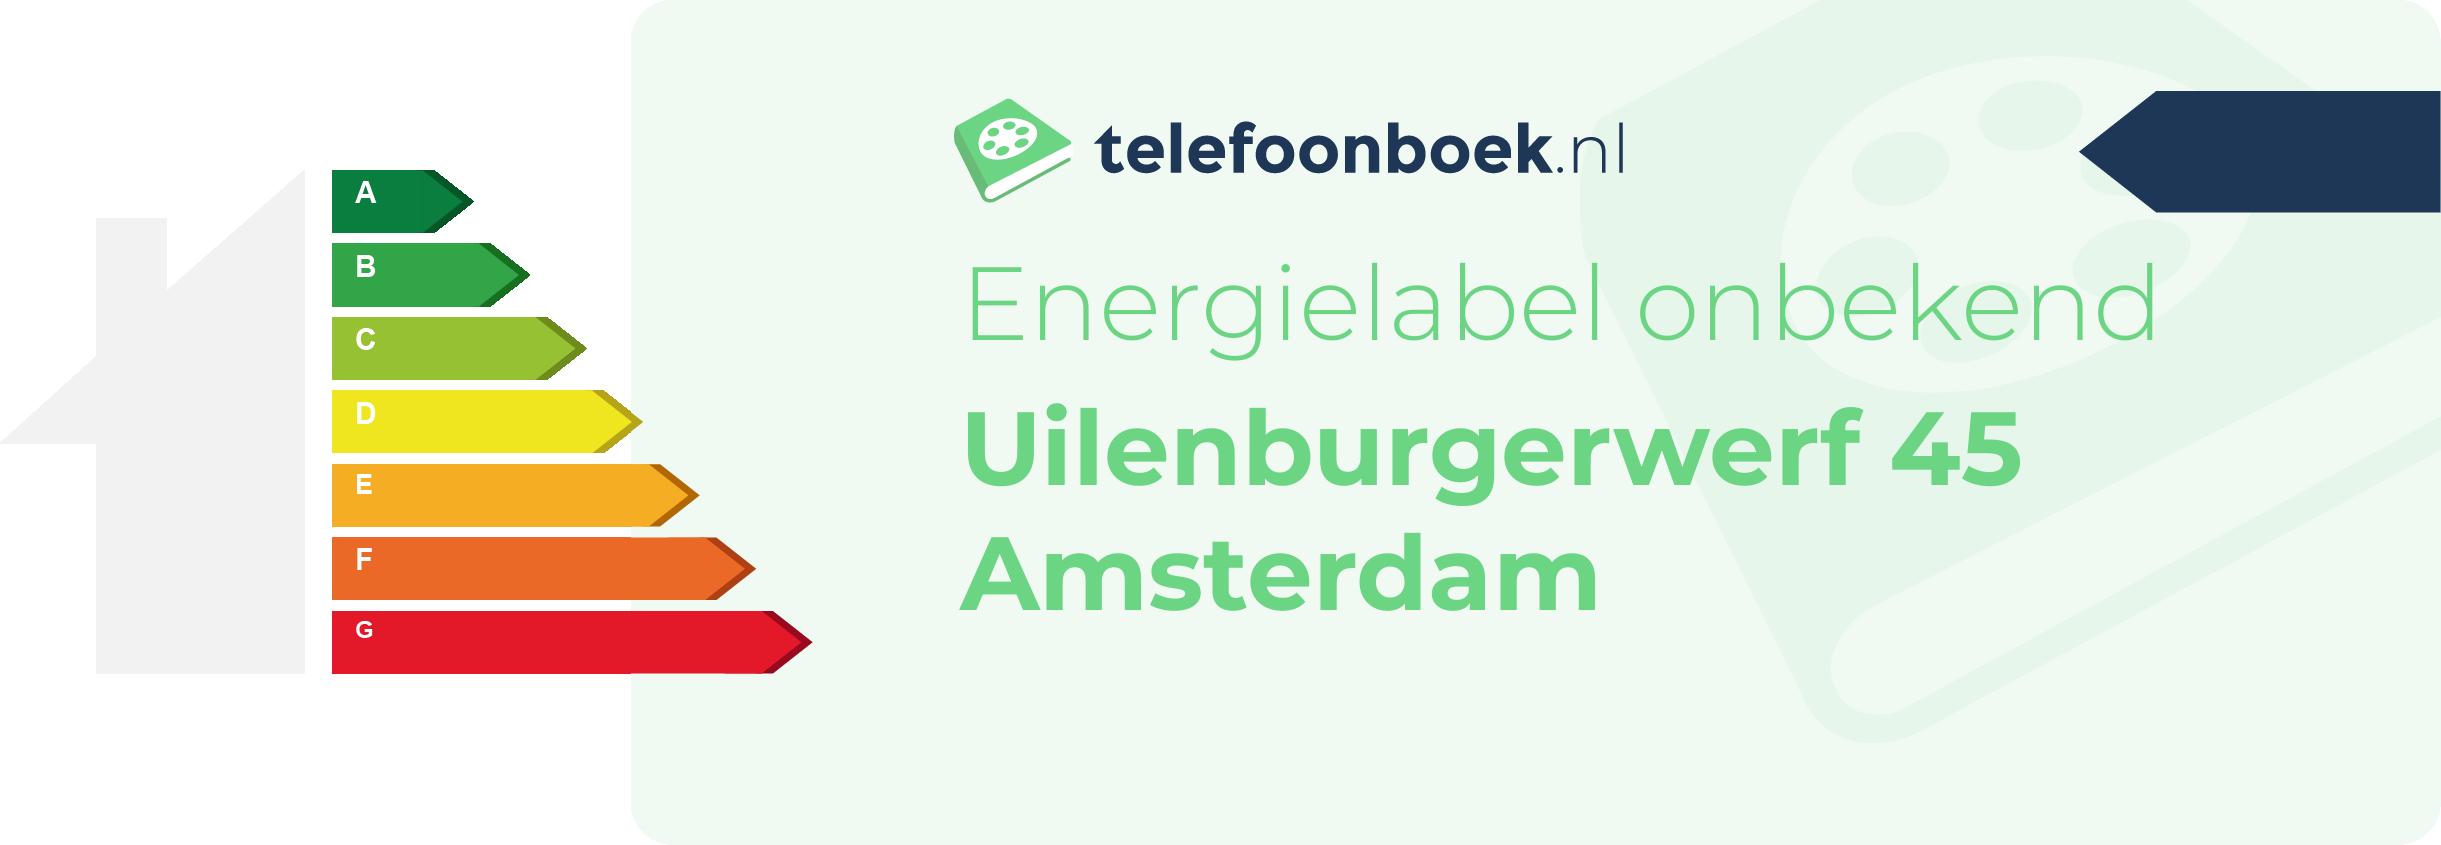 Energielabel Uilenburgerwerf 45 Amsterdam